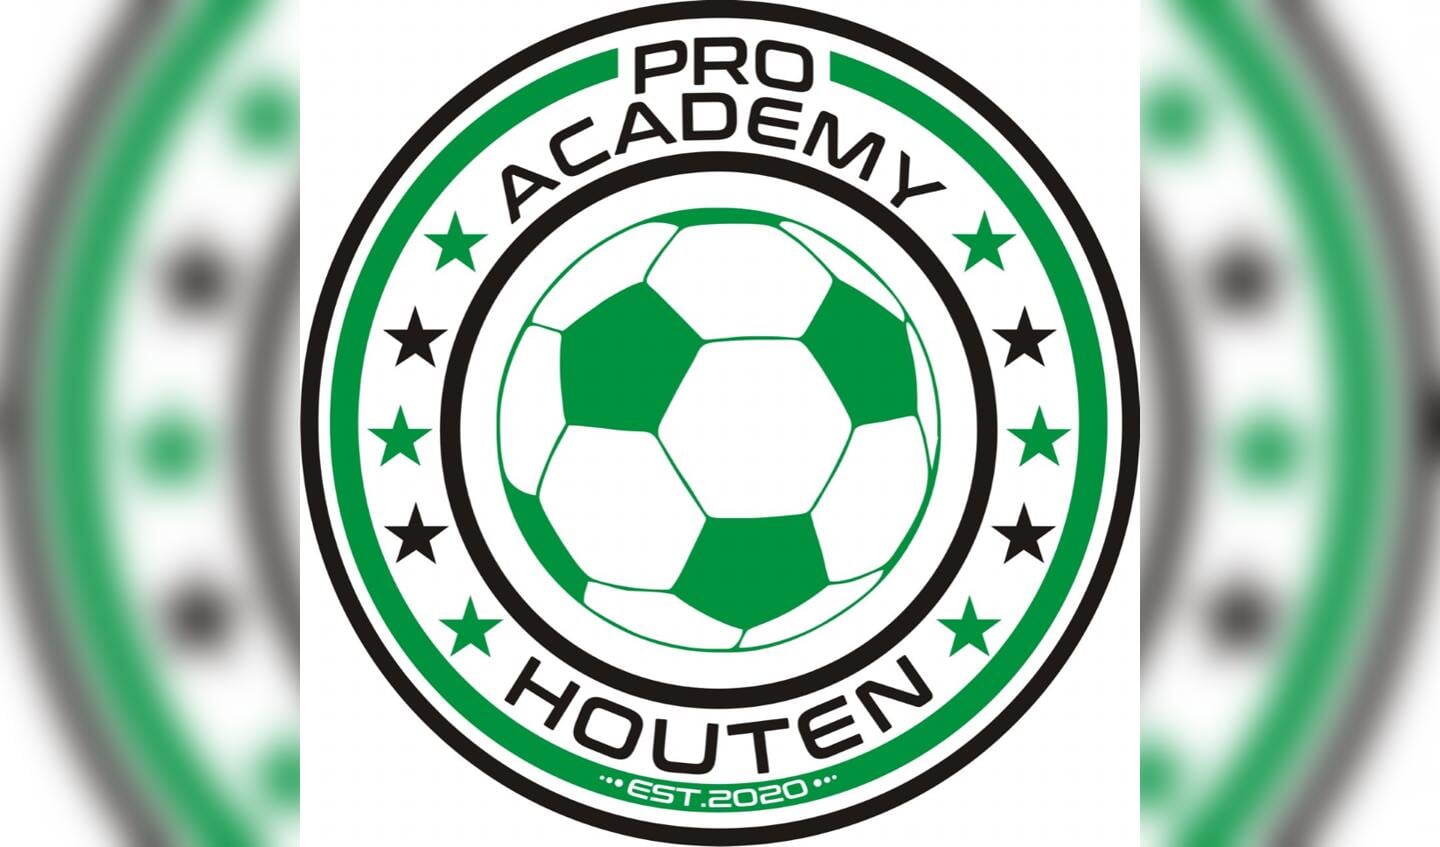 Wiebe de Haan heeft Pro Academy Houten opgericht